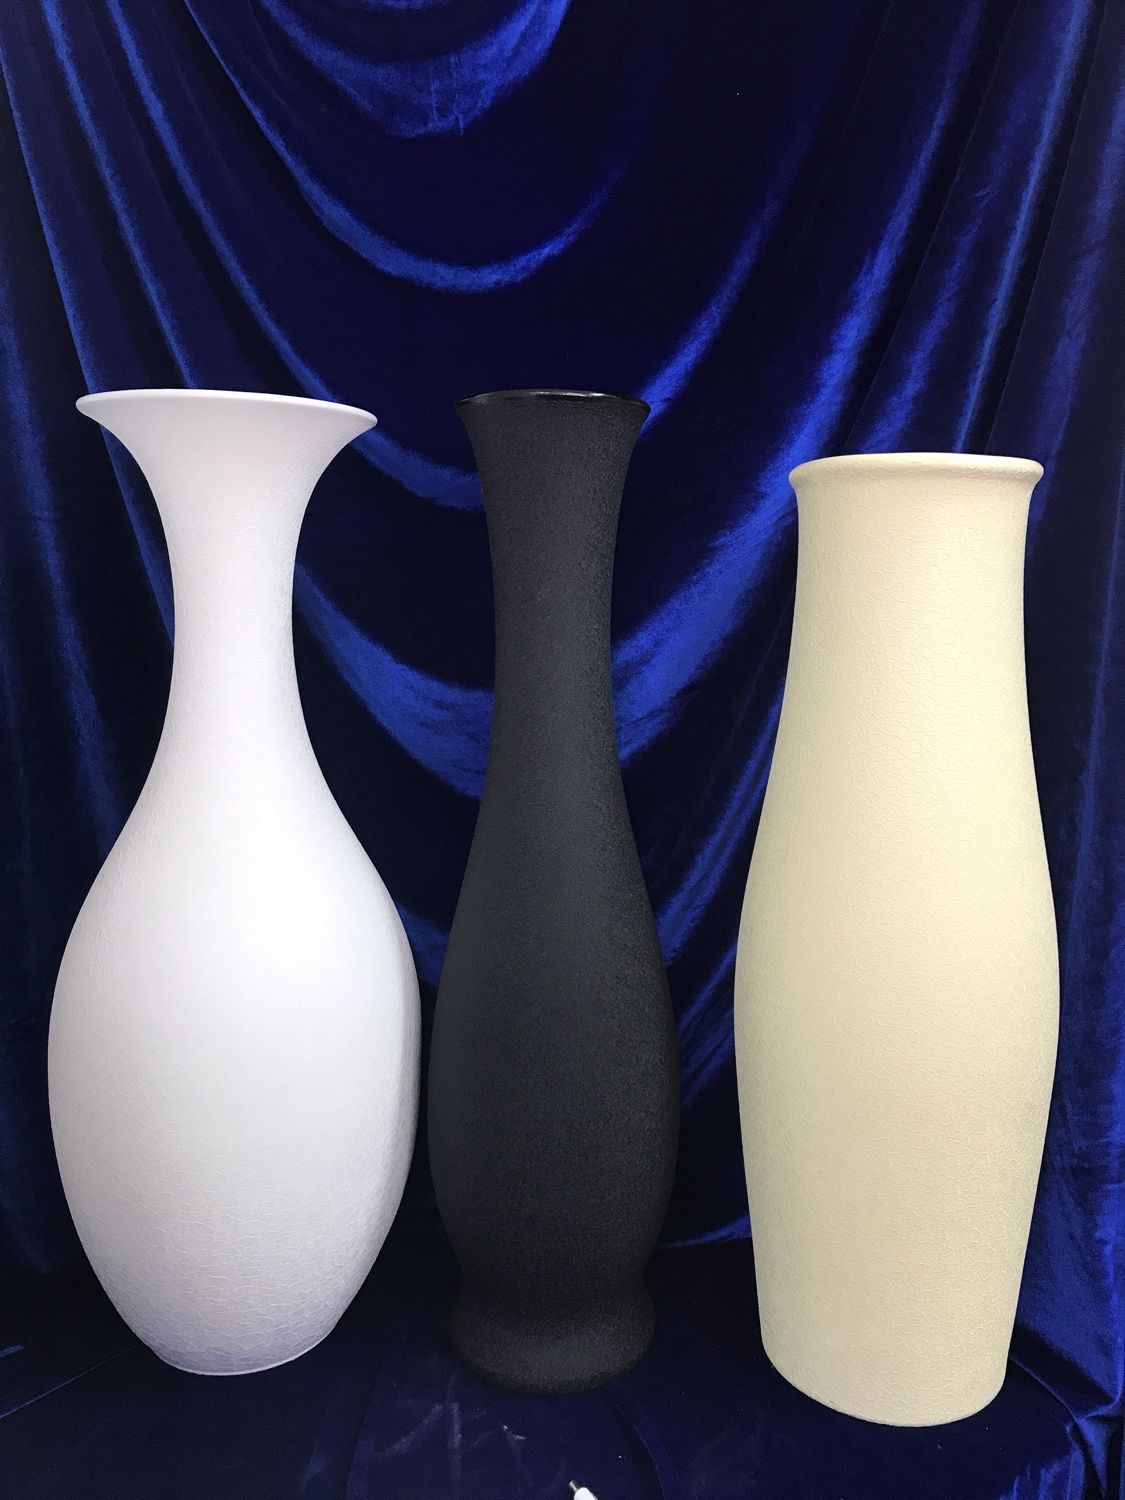 Керамическая ваза напольная купить. Ваза "Junas" 2002815 a. Kd203/00502 керамическая ваза. Ваза "Rubina" 2006110. Ваза керамика, напольная, 56х16 см, ребристая, JC-11814, черная.